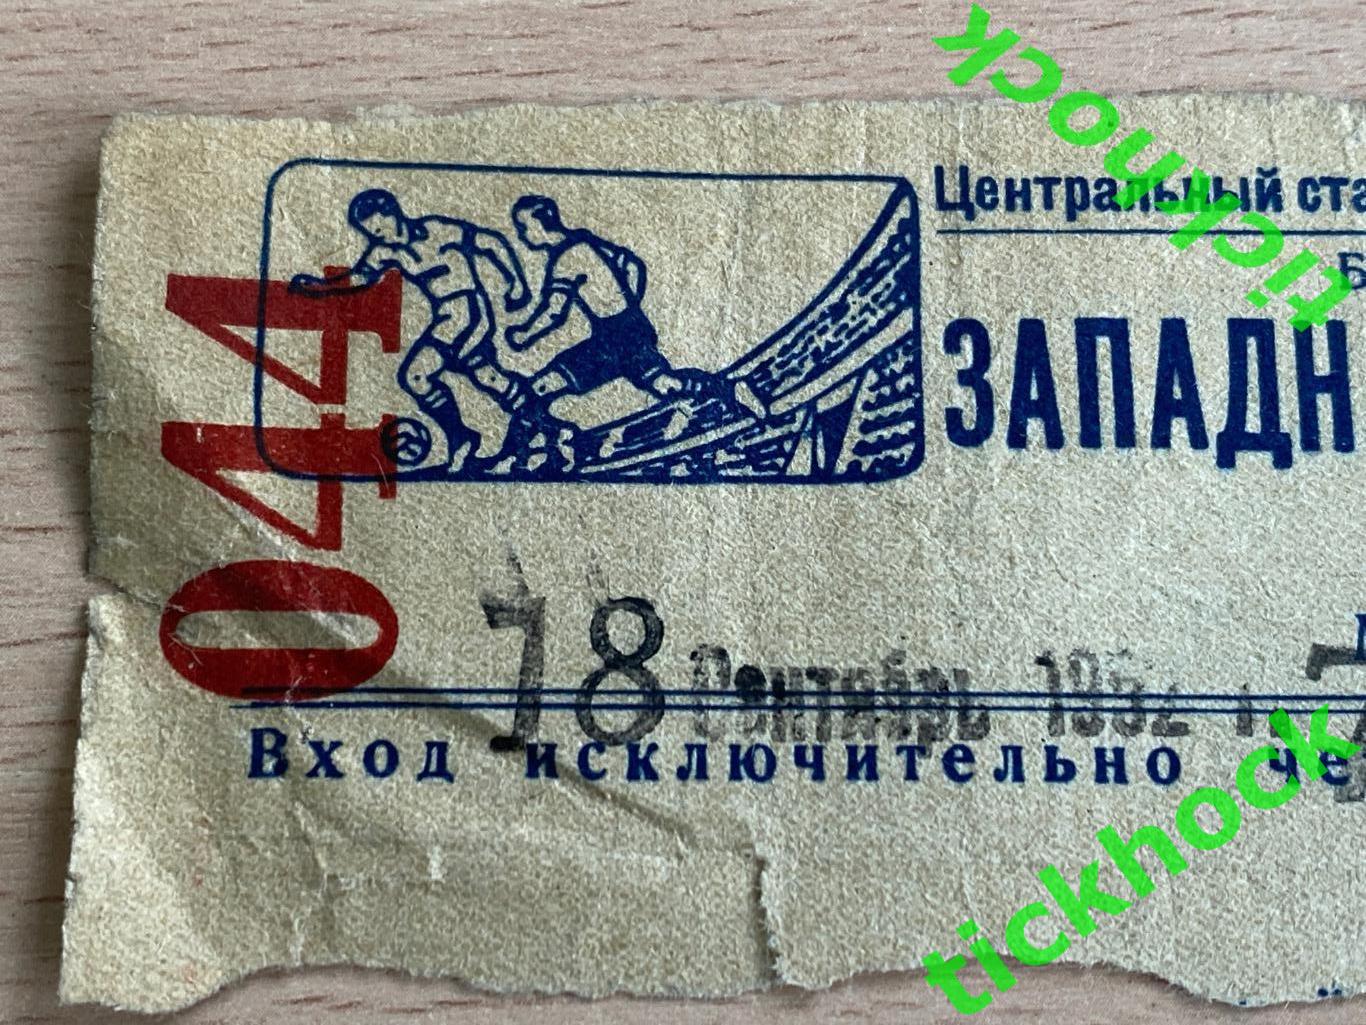 Спартак Москва - команда г. Калинина 18.09.1952 Западная трибуна 1